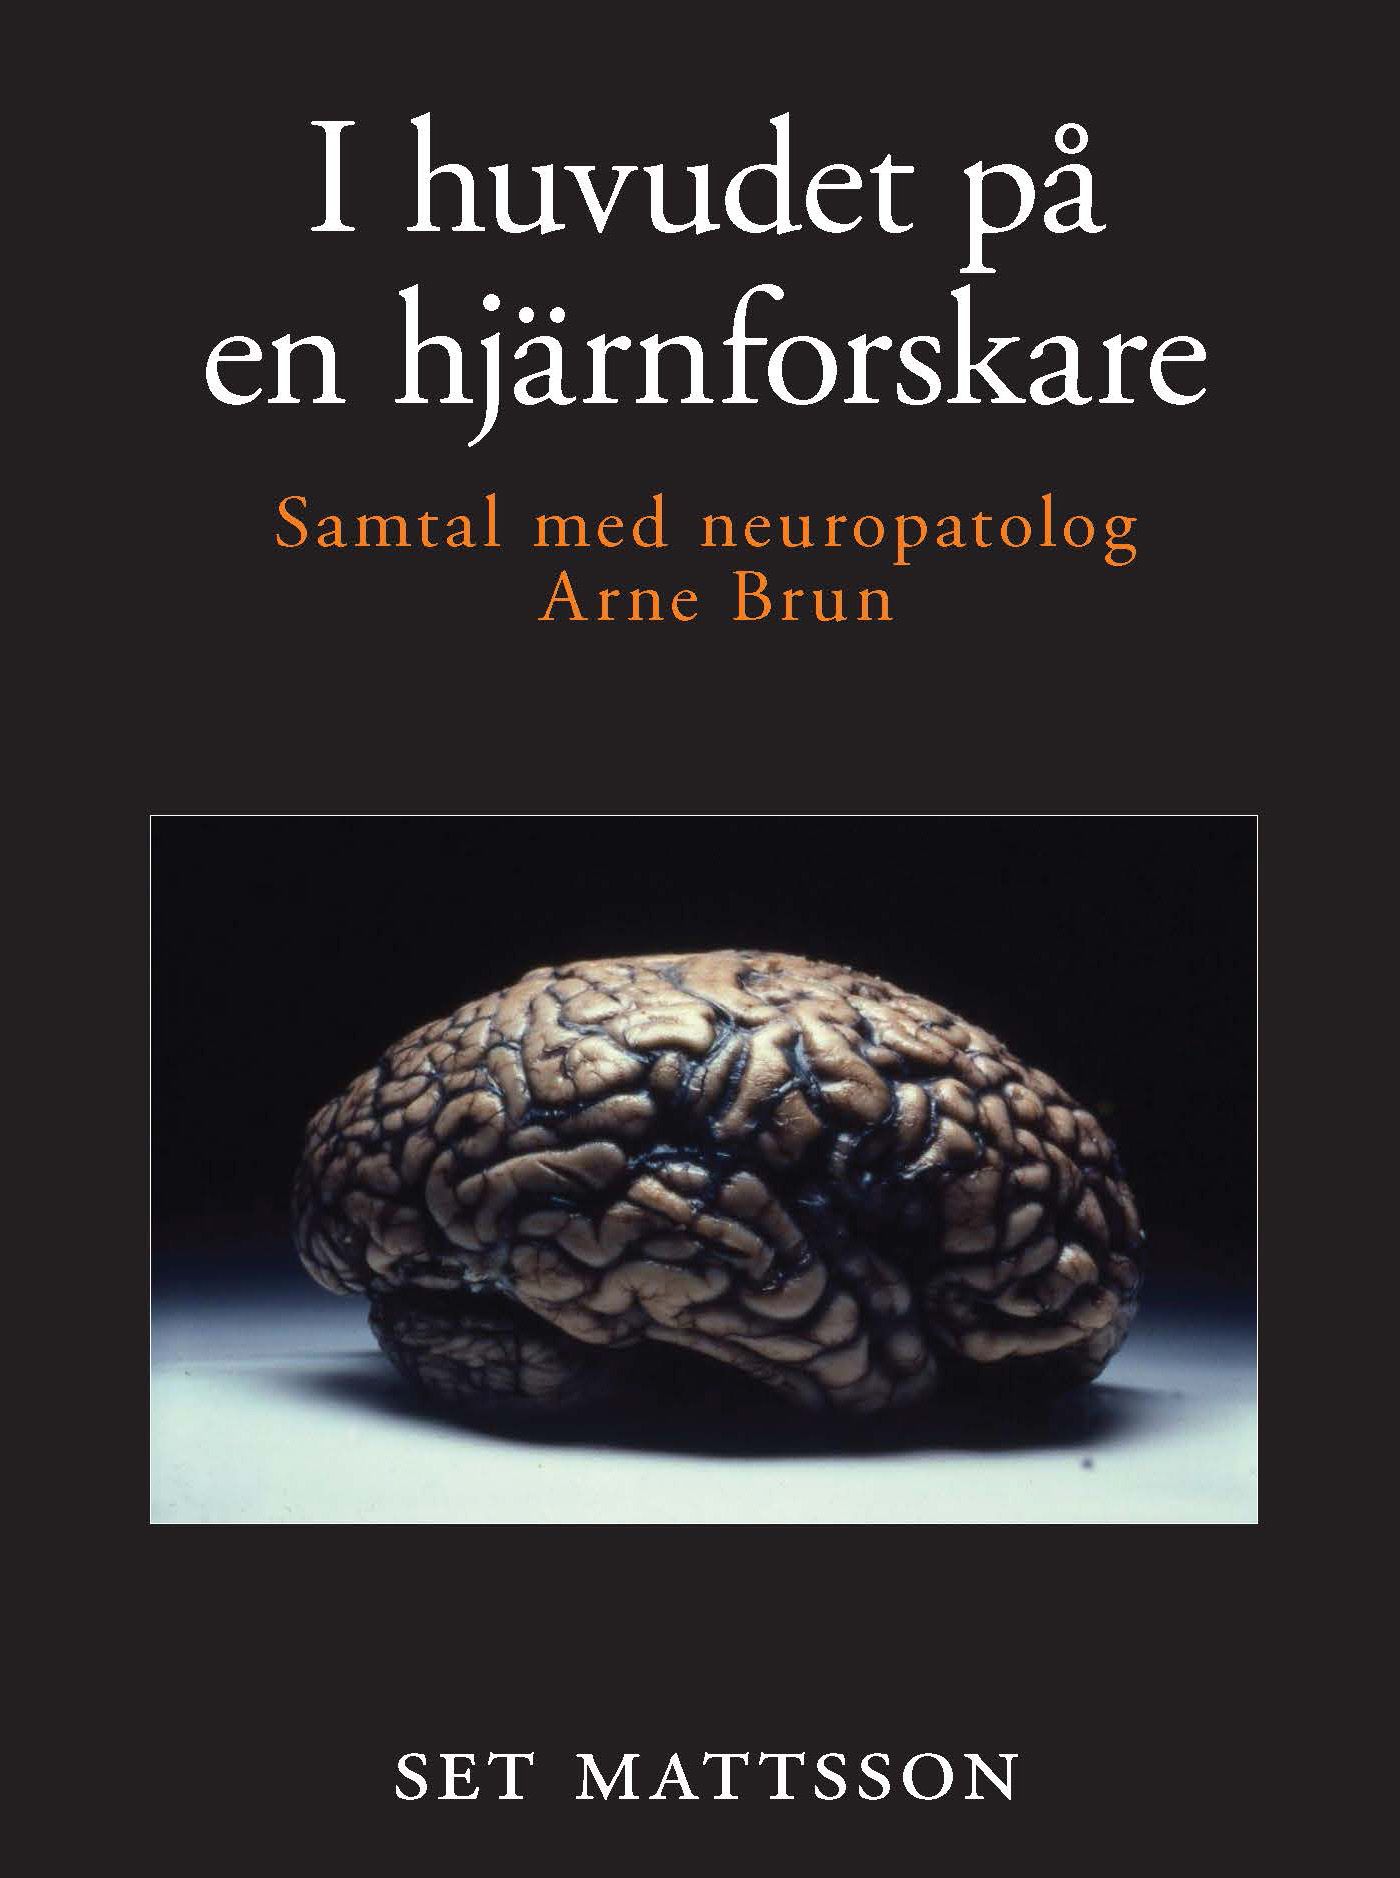 I huvudet på en hjärnforskare - samtal med neuropatolog Arne Brun, eBook by Set Mattsson